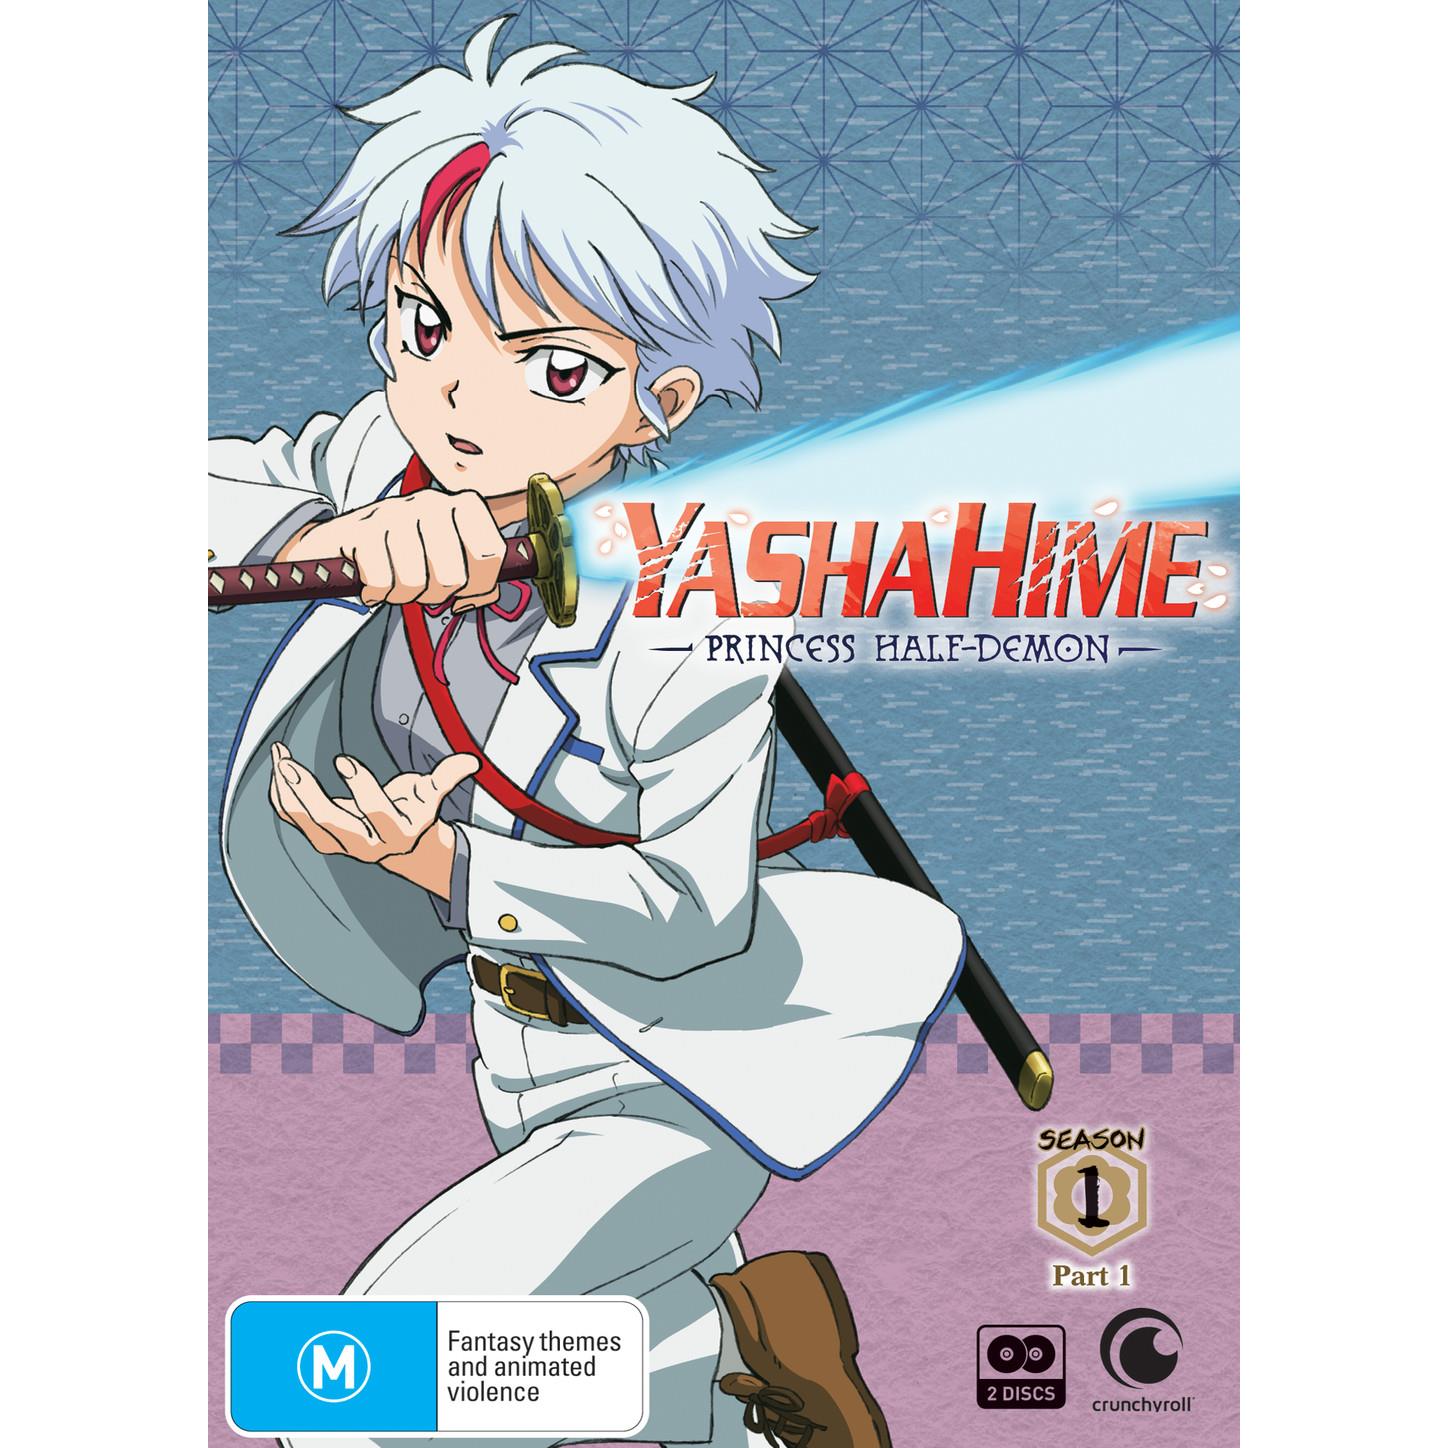 Yashahime: 5 Things About Inuyasha It Fixed (& 5 It Ruined)